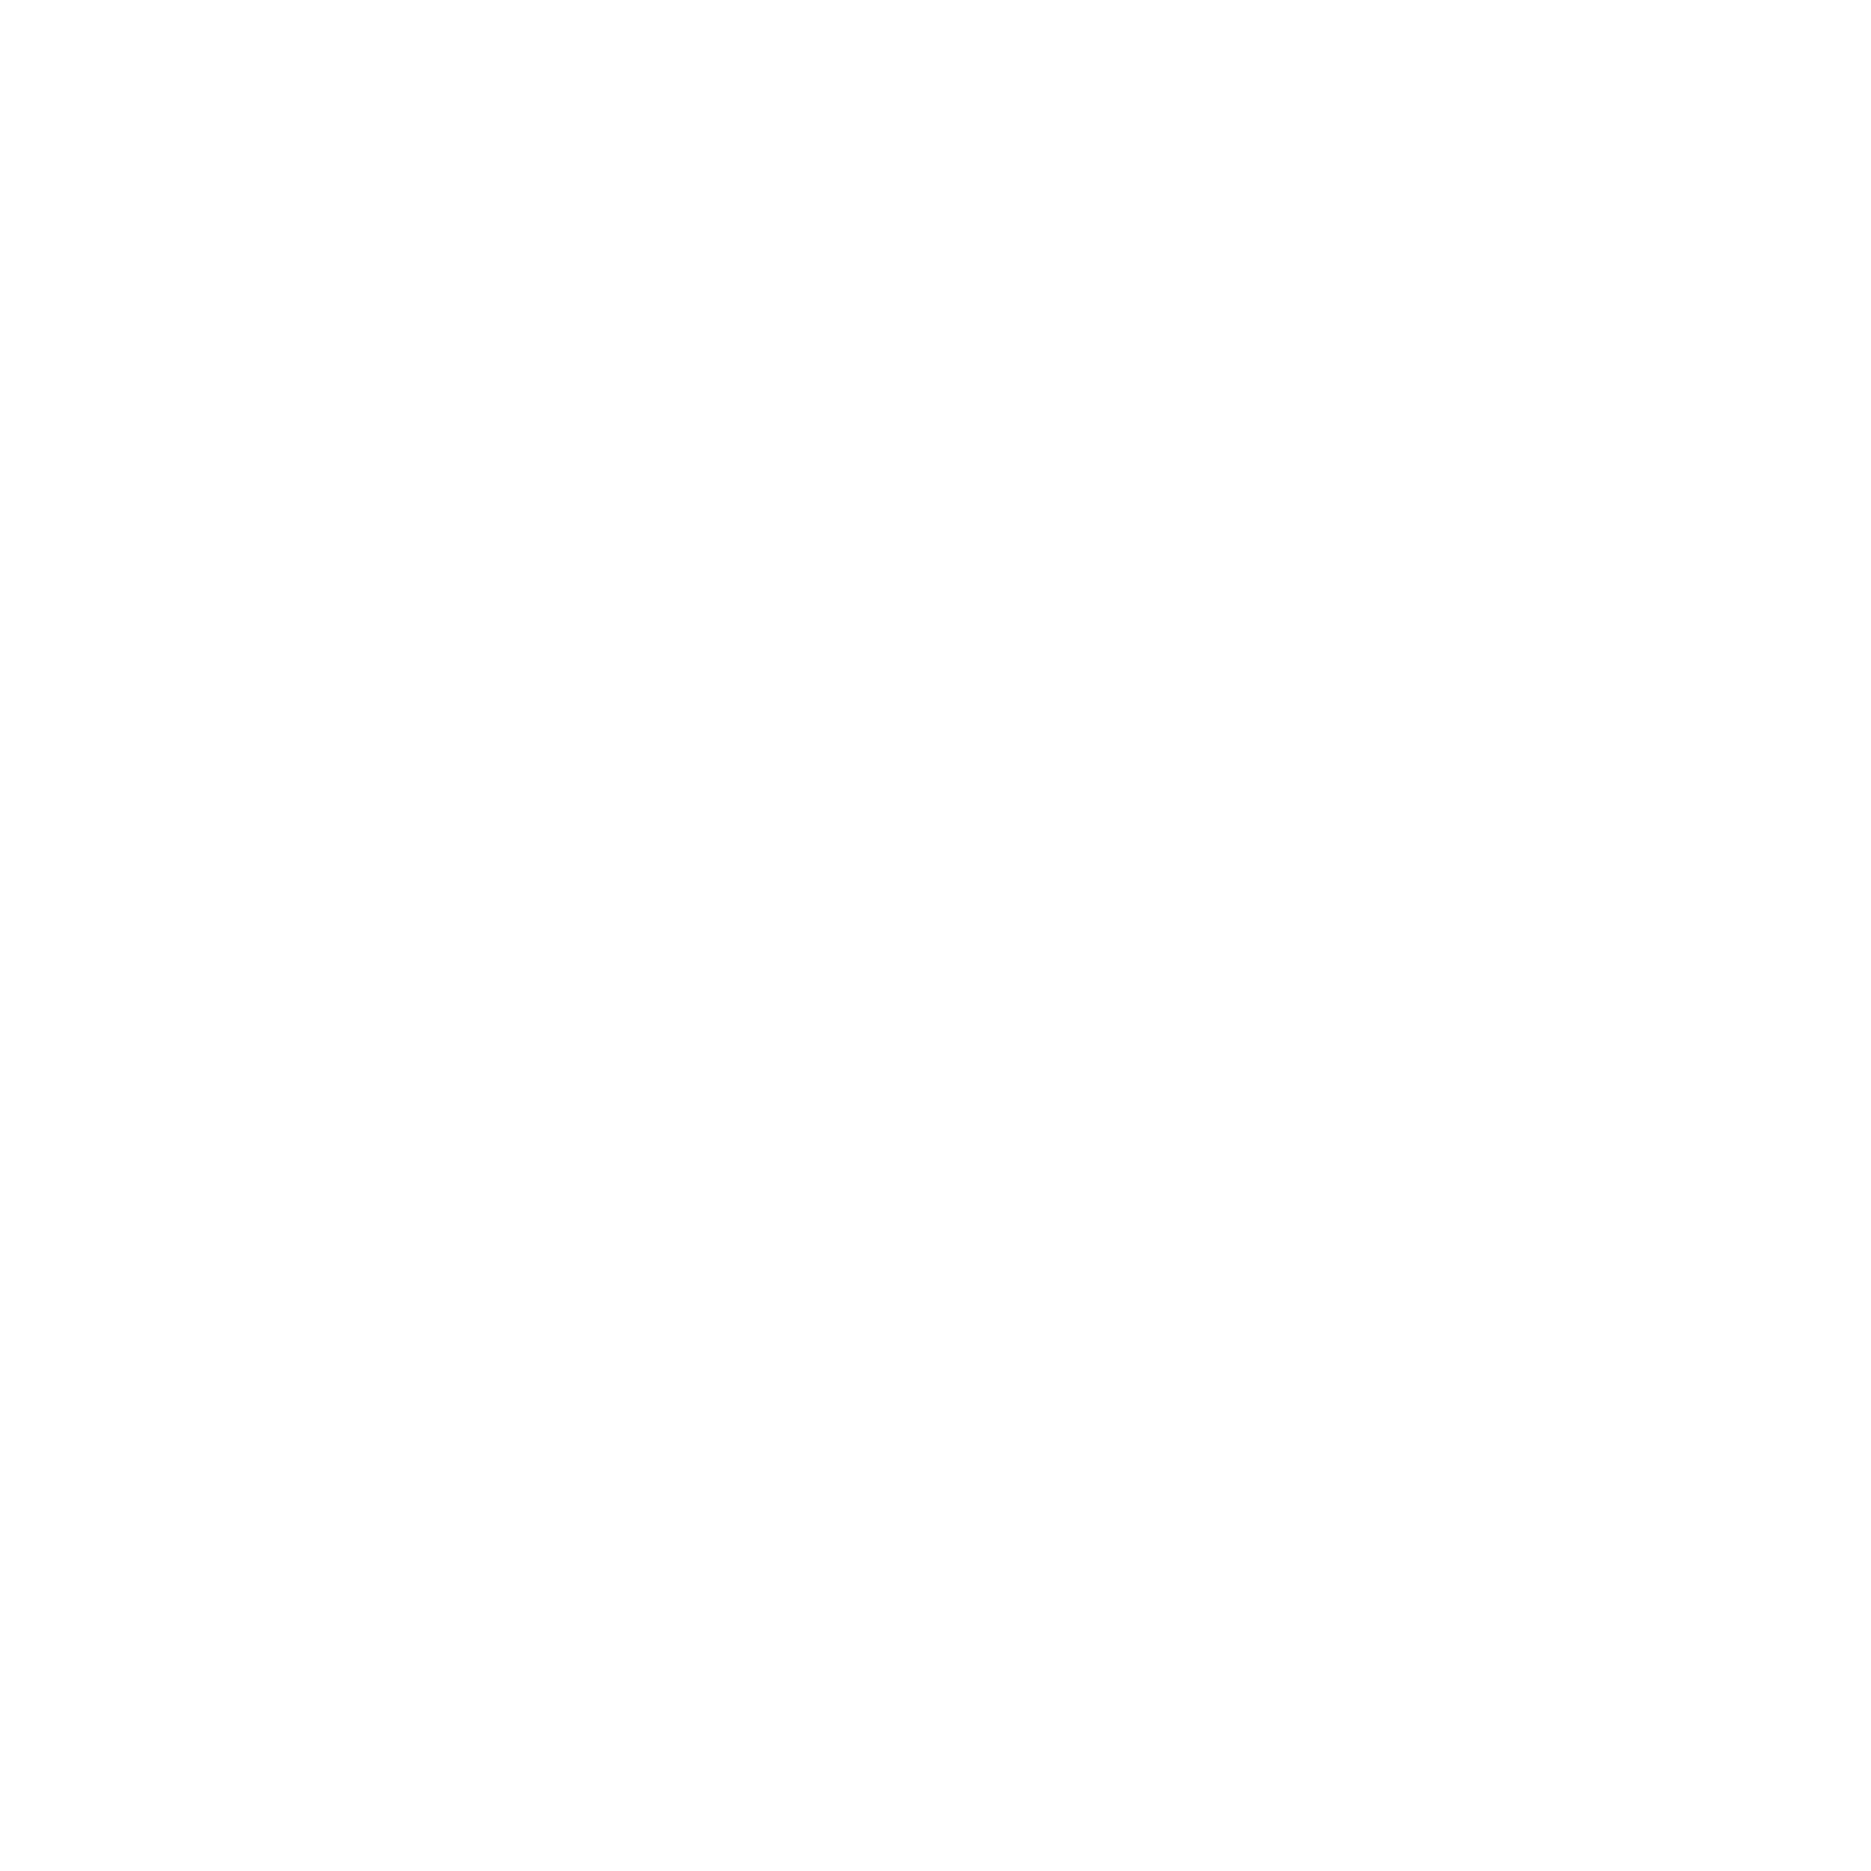 JETZT NEU bei PHYSI FOOD & DELI: JEDEN SAMSTAG BRUNCH VON 10 bis 14 UHR